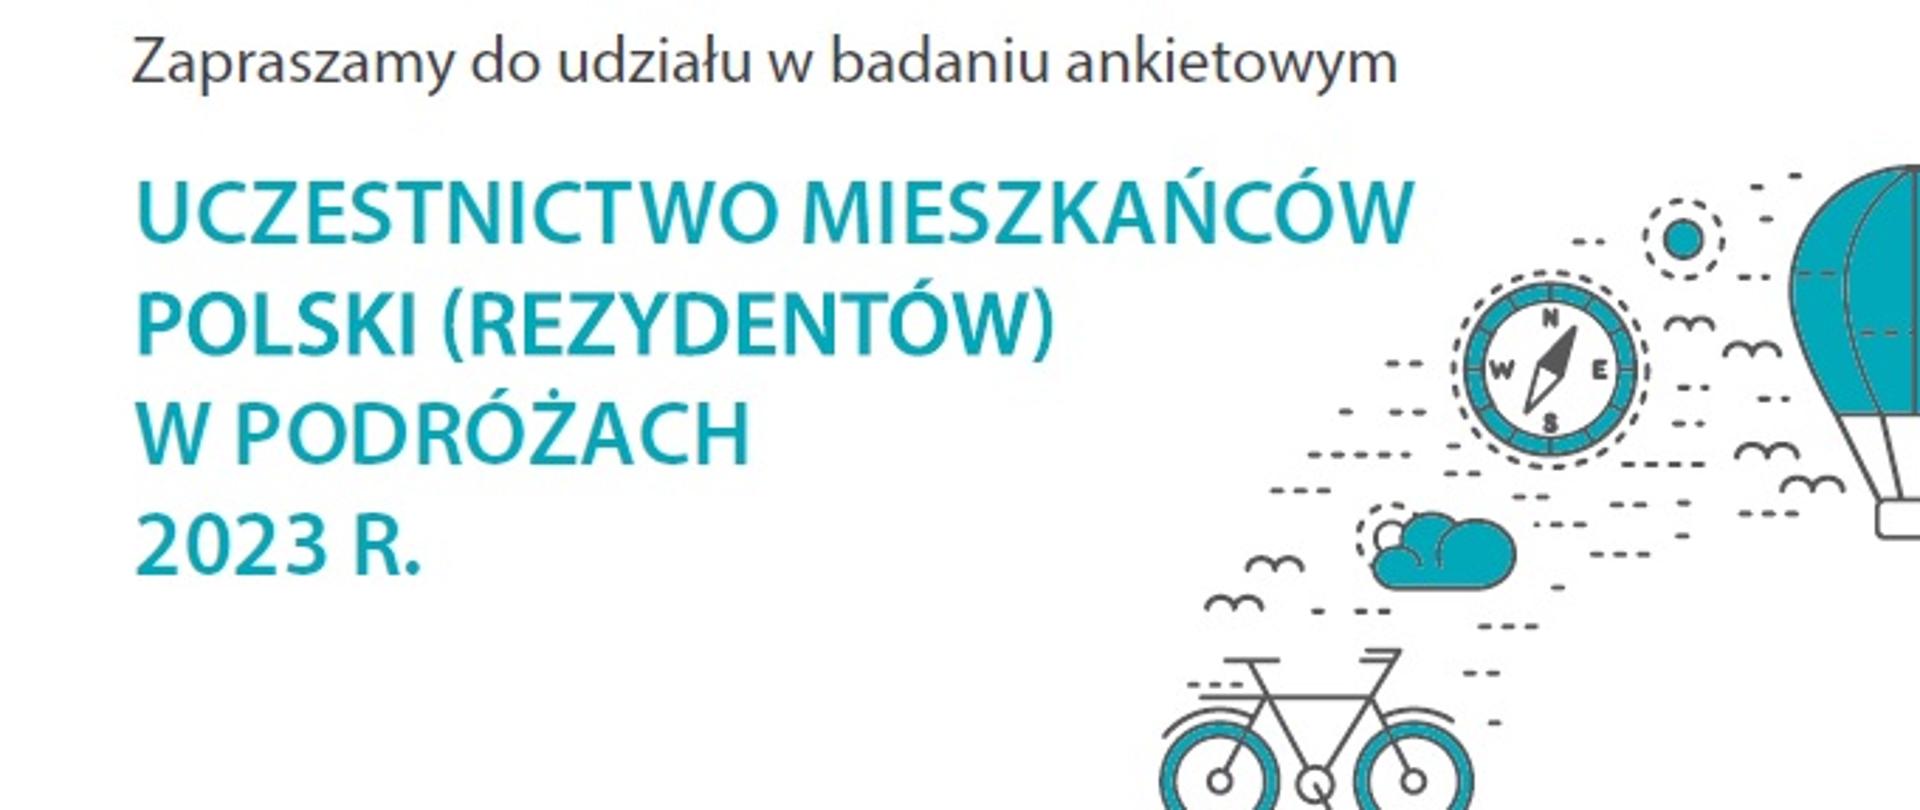 Uczestnictwo mieszkańców Polski (rezydentów) w podróżach 2023 r.